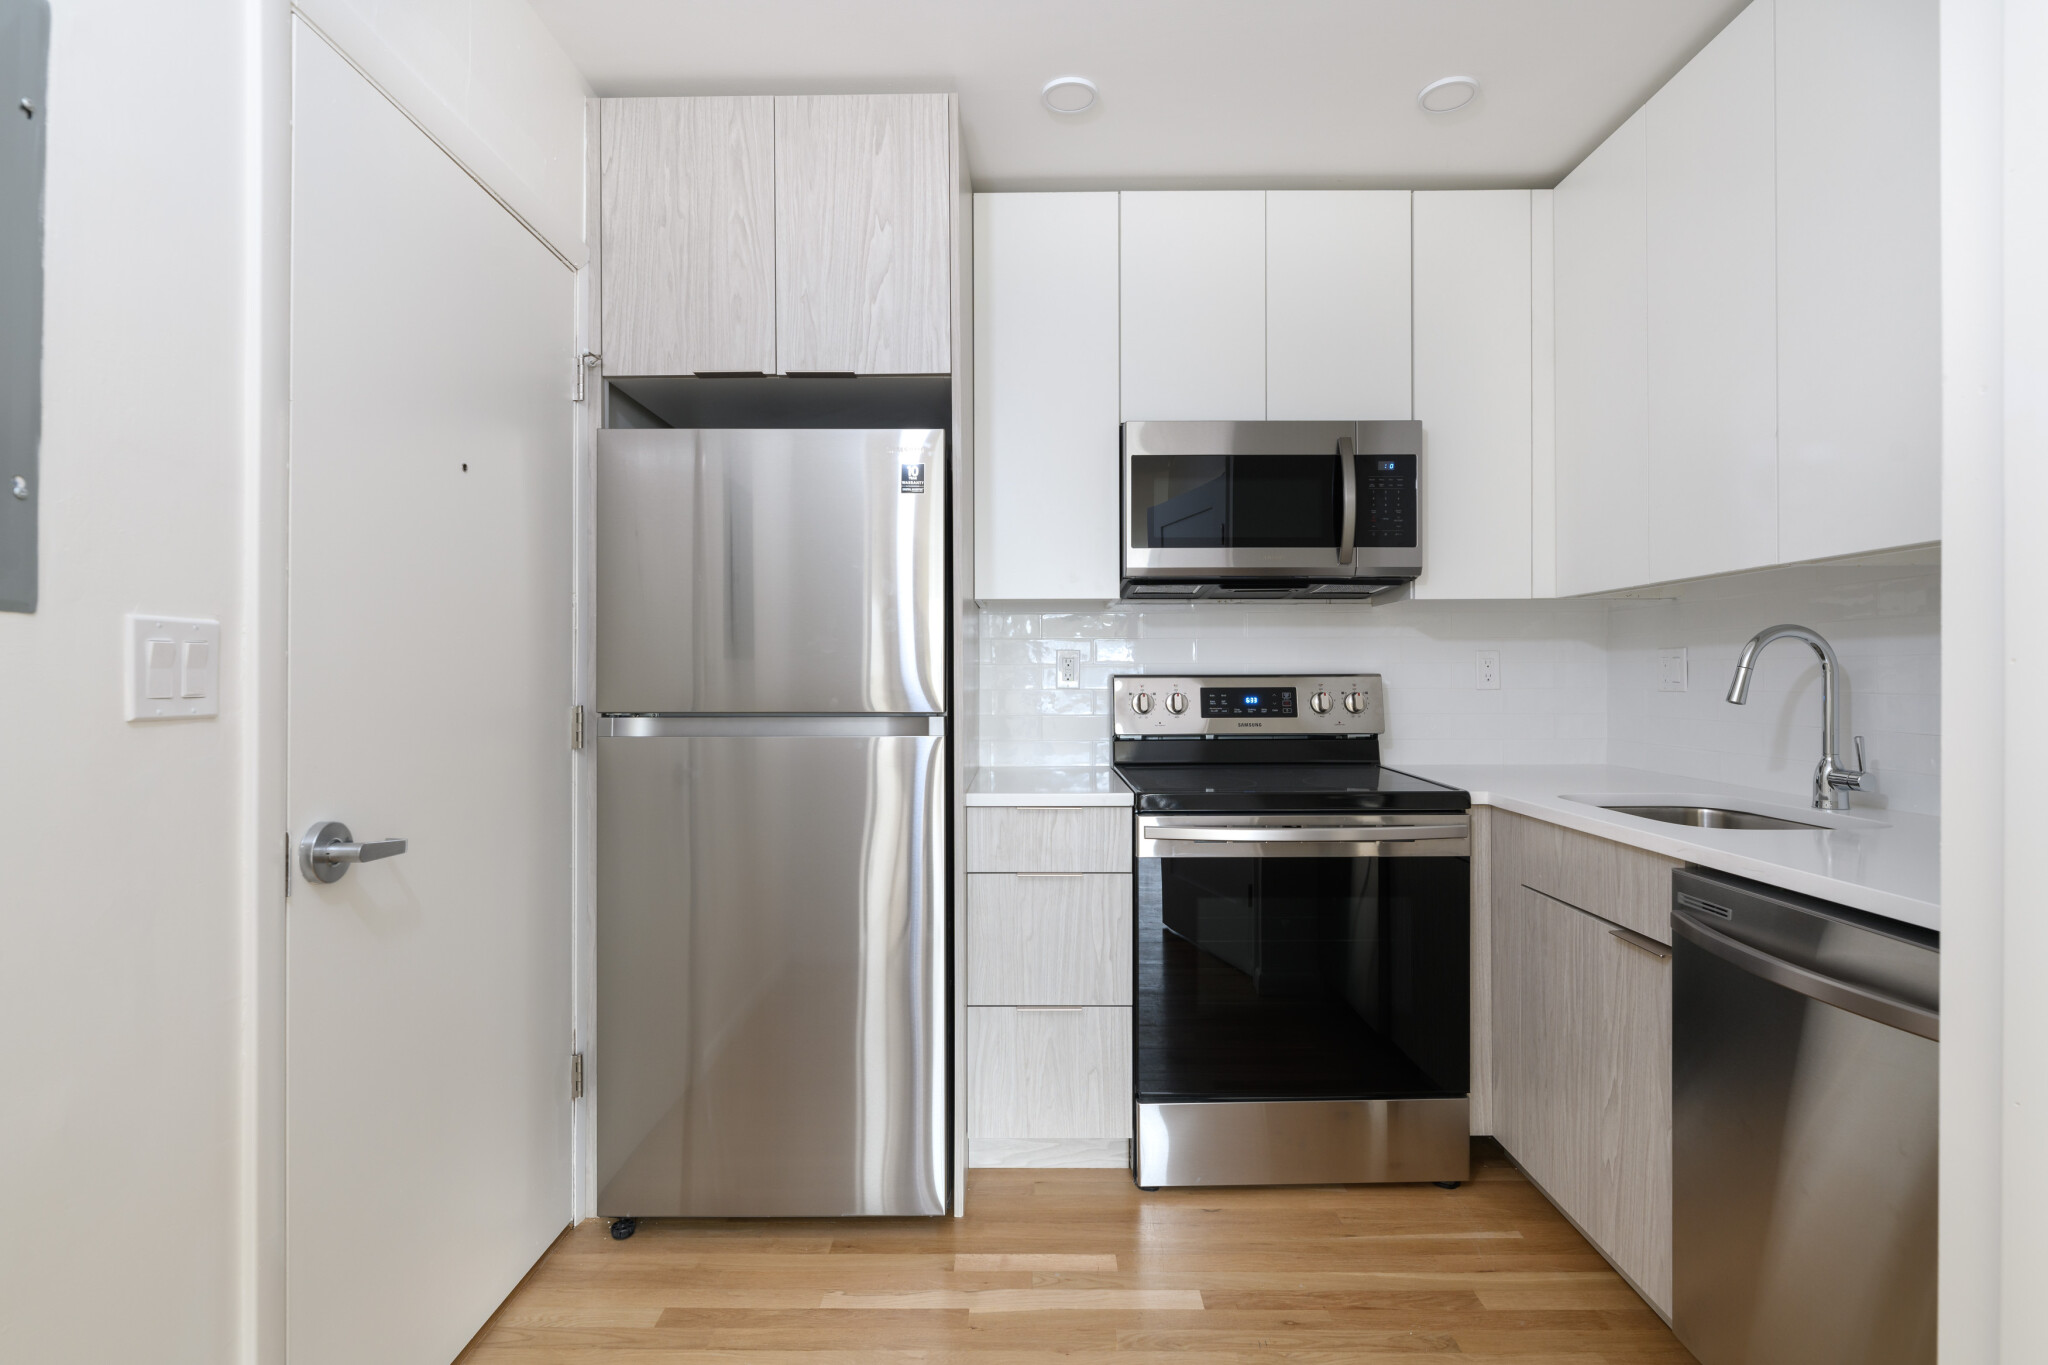 Photos of apartment on Germania St.,Boston MA 02130